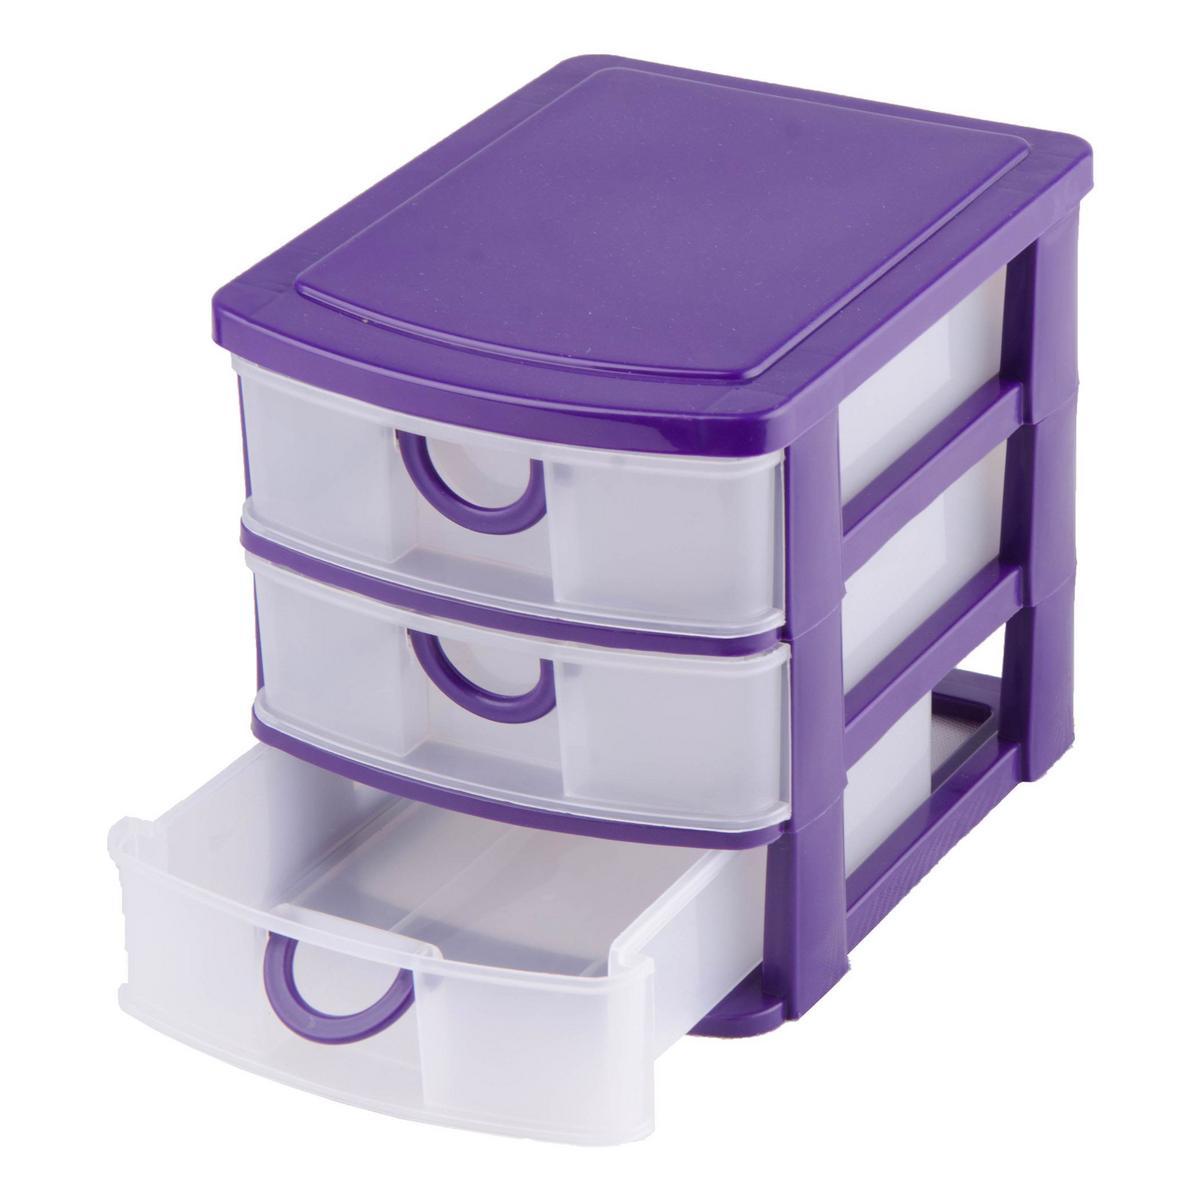 Tour de rangement 2 tiroirs en plastique Klic coloris violet